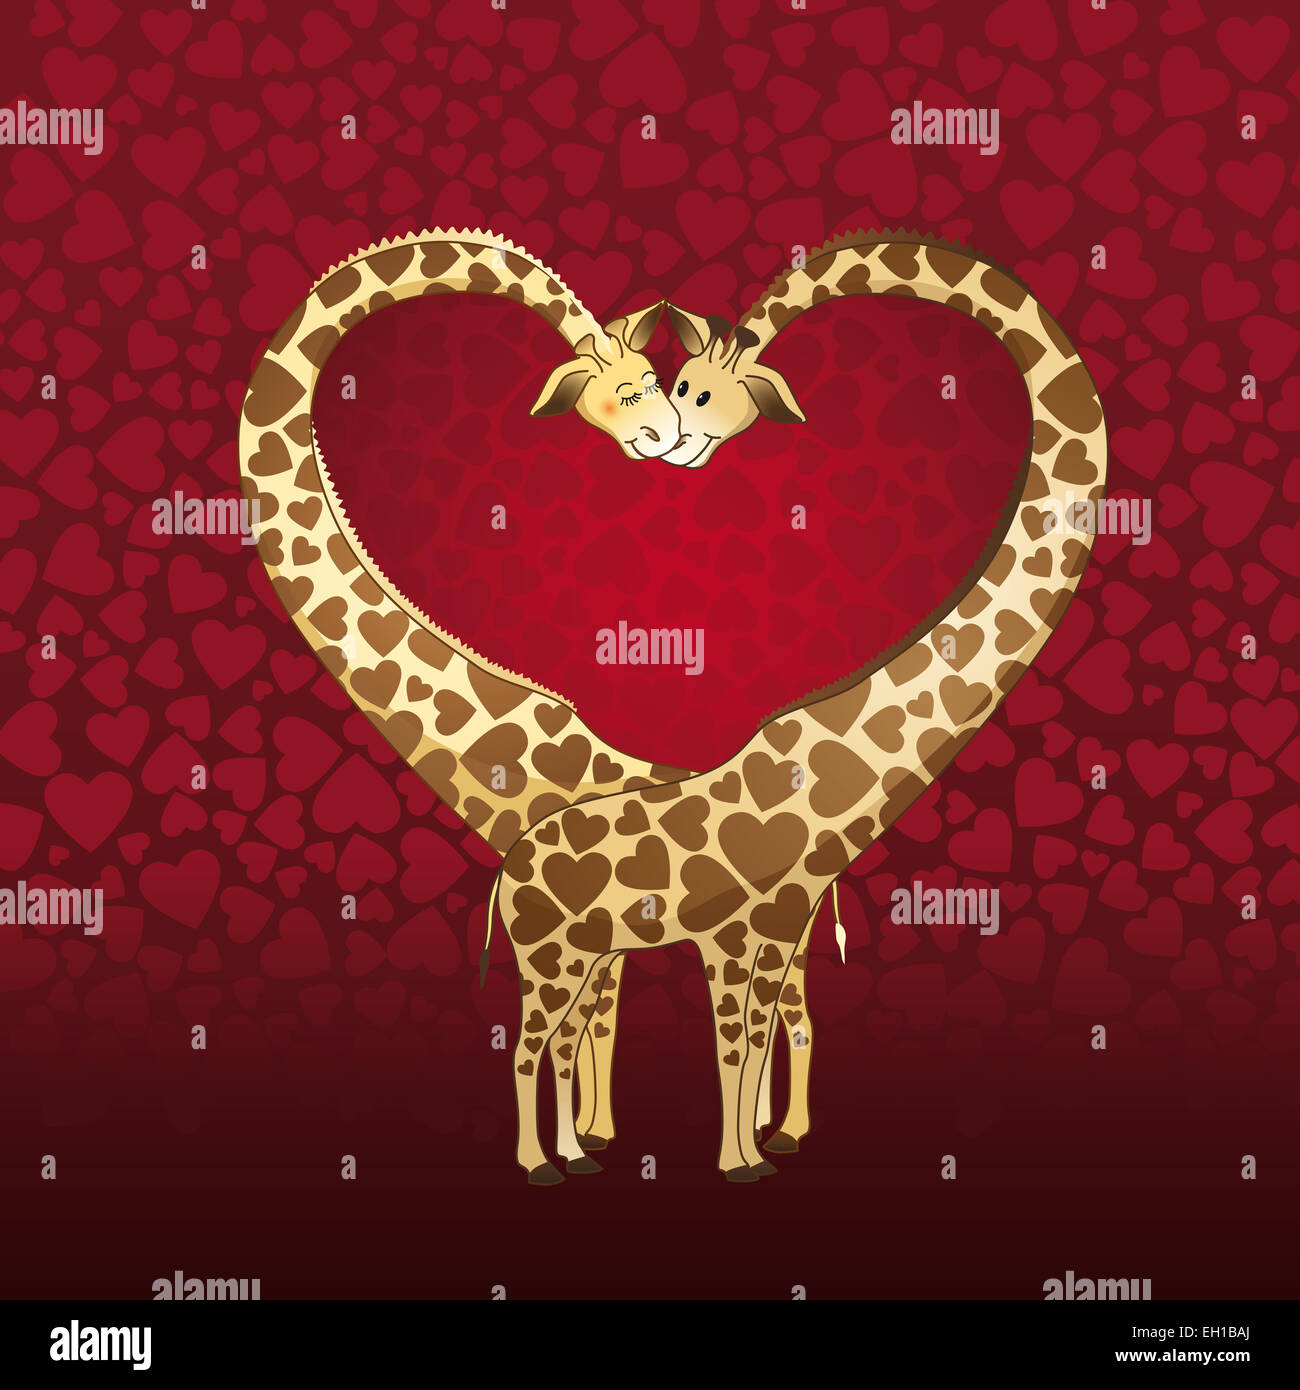 Großes Herz durch eine Giraffe paar, ausgelegt für eine Valentinstag-Karte gebildet. Stockfoto